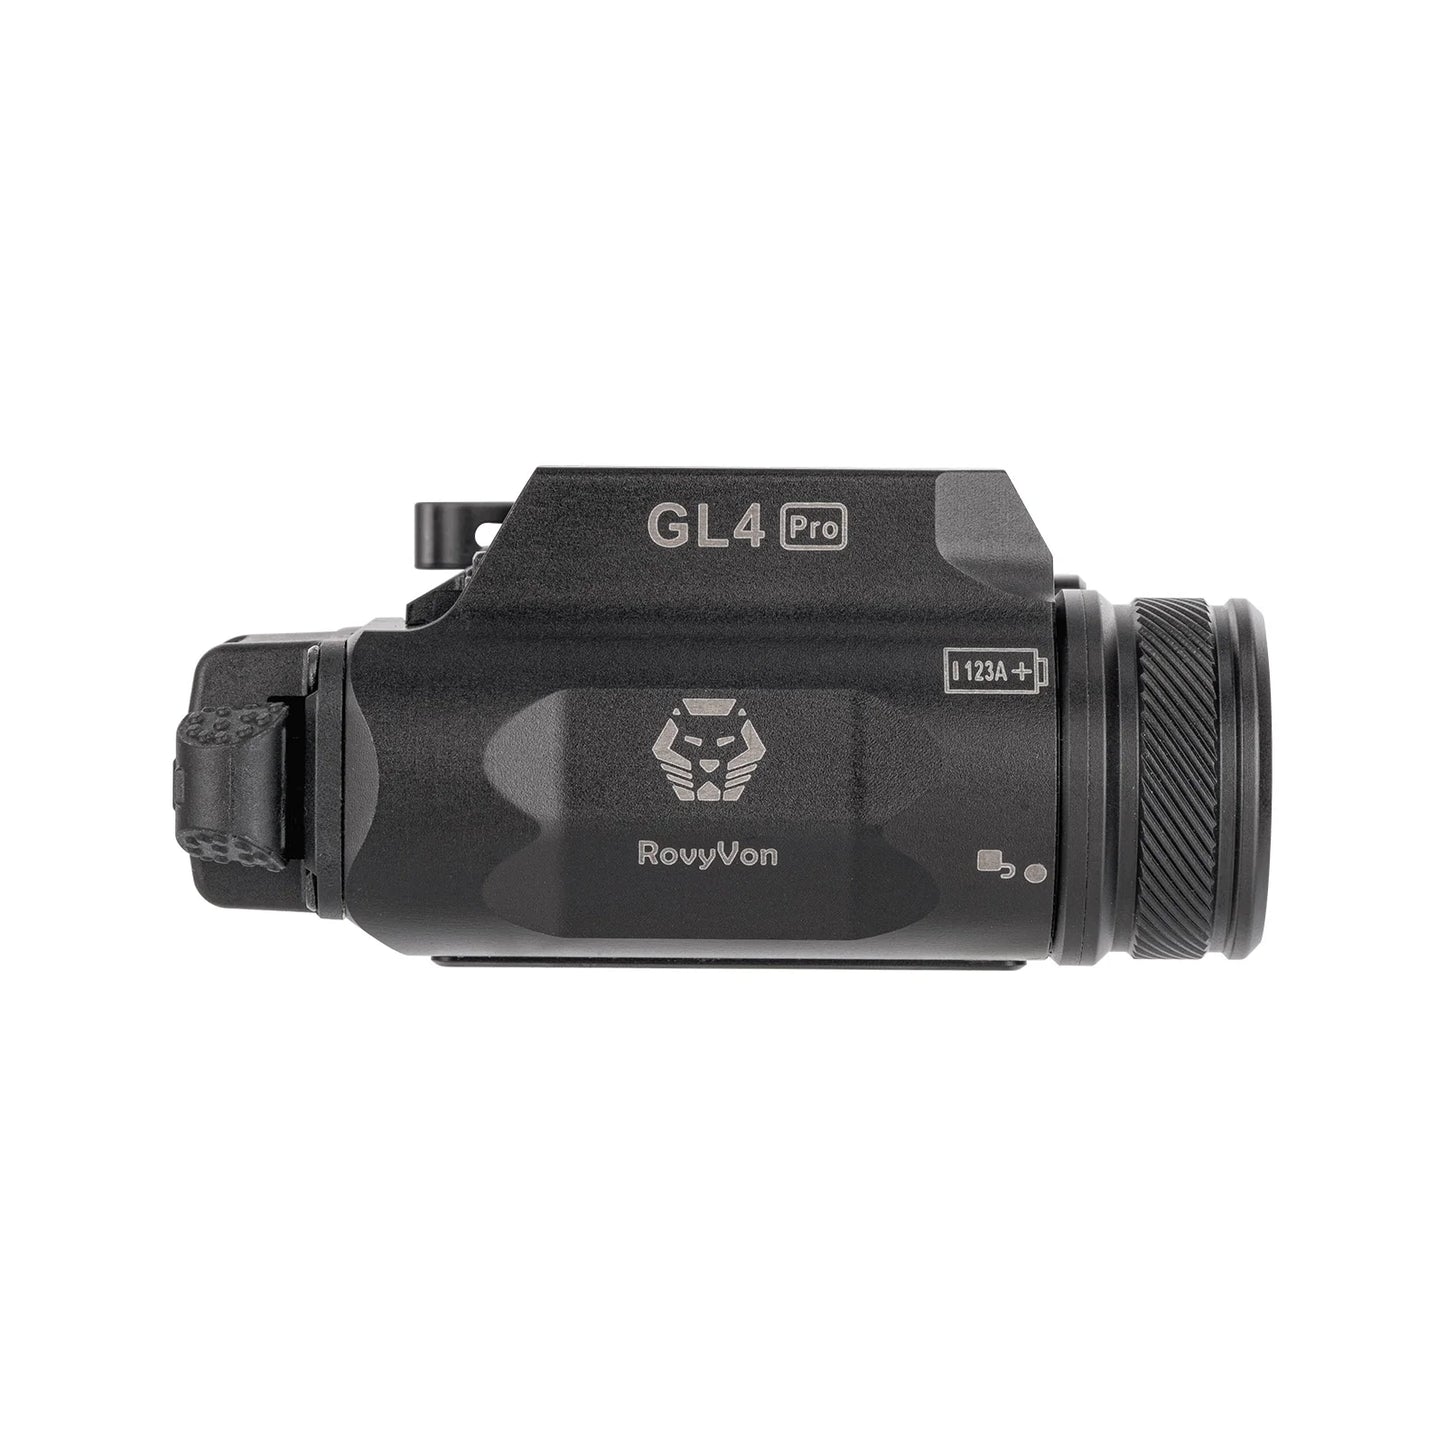 Rovyvon GL4 Pro 4-in-1 Laser and Illuminator